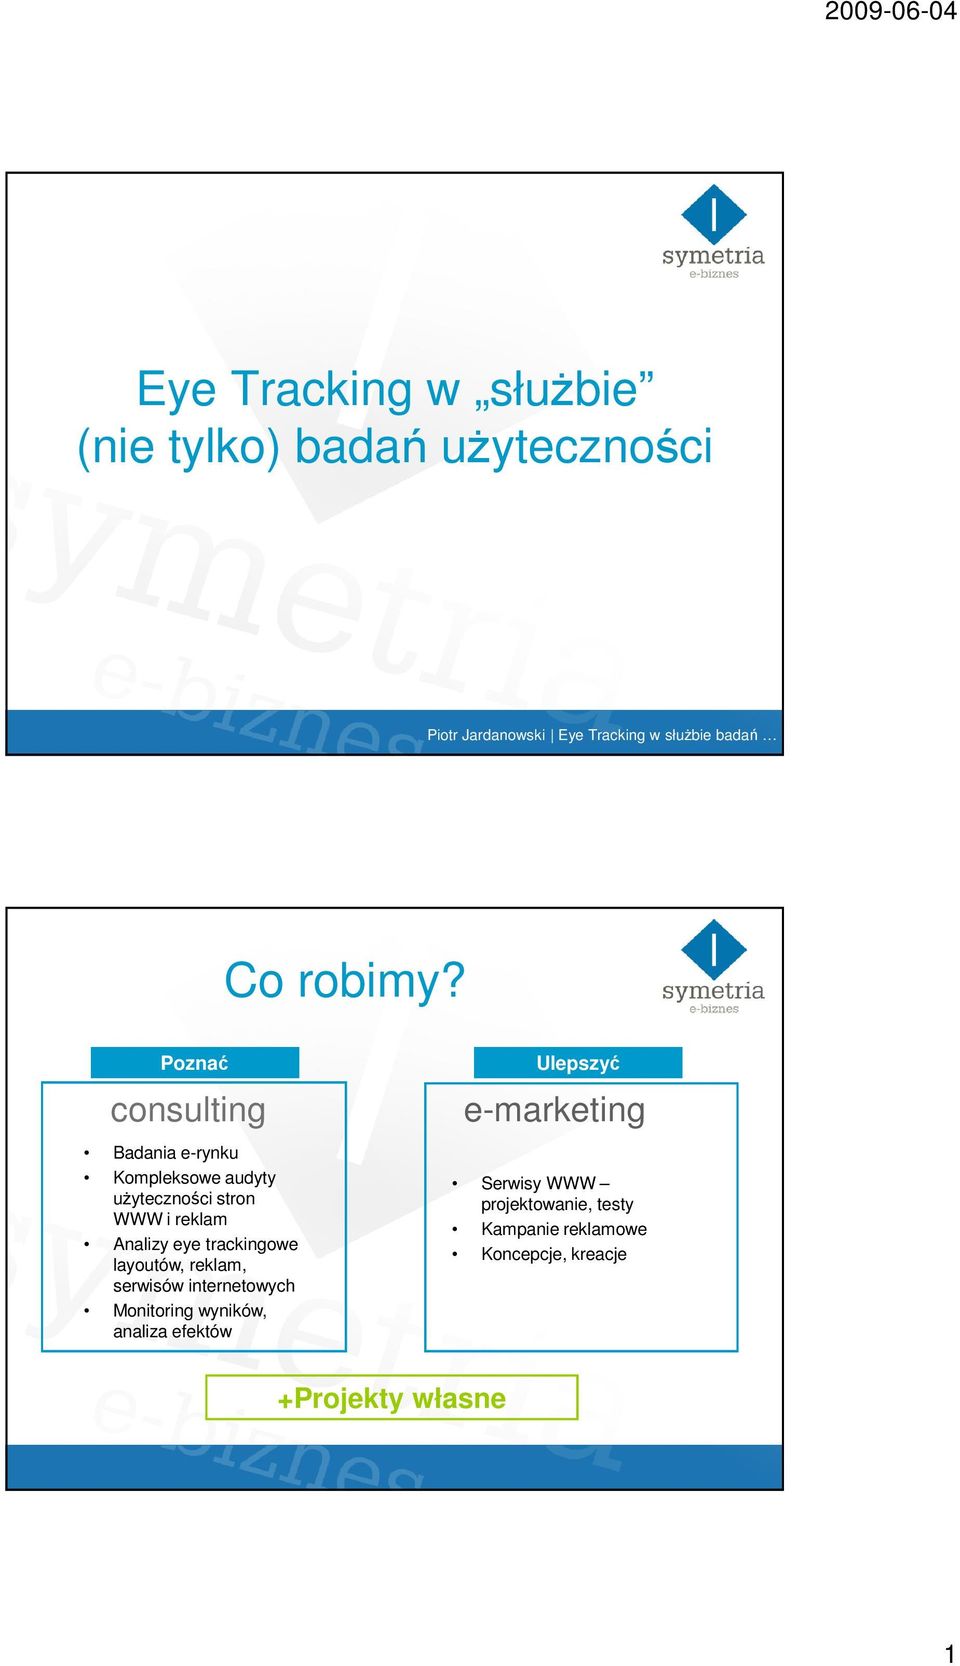 Analizy eye trackingowe layoutów, reklam, serwisów internetowych Monitoring wyników,